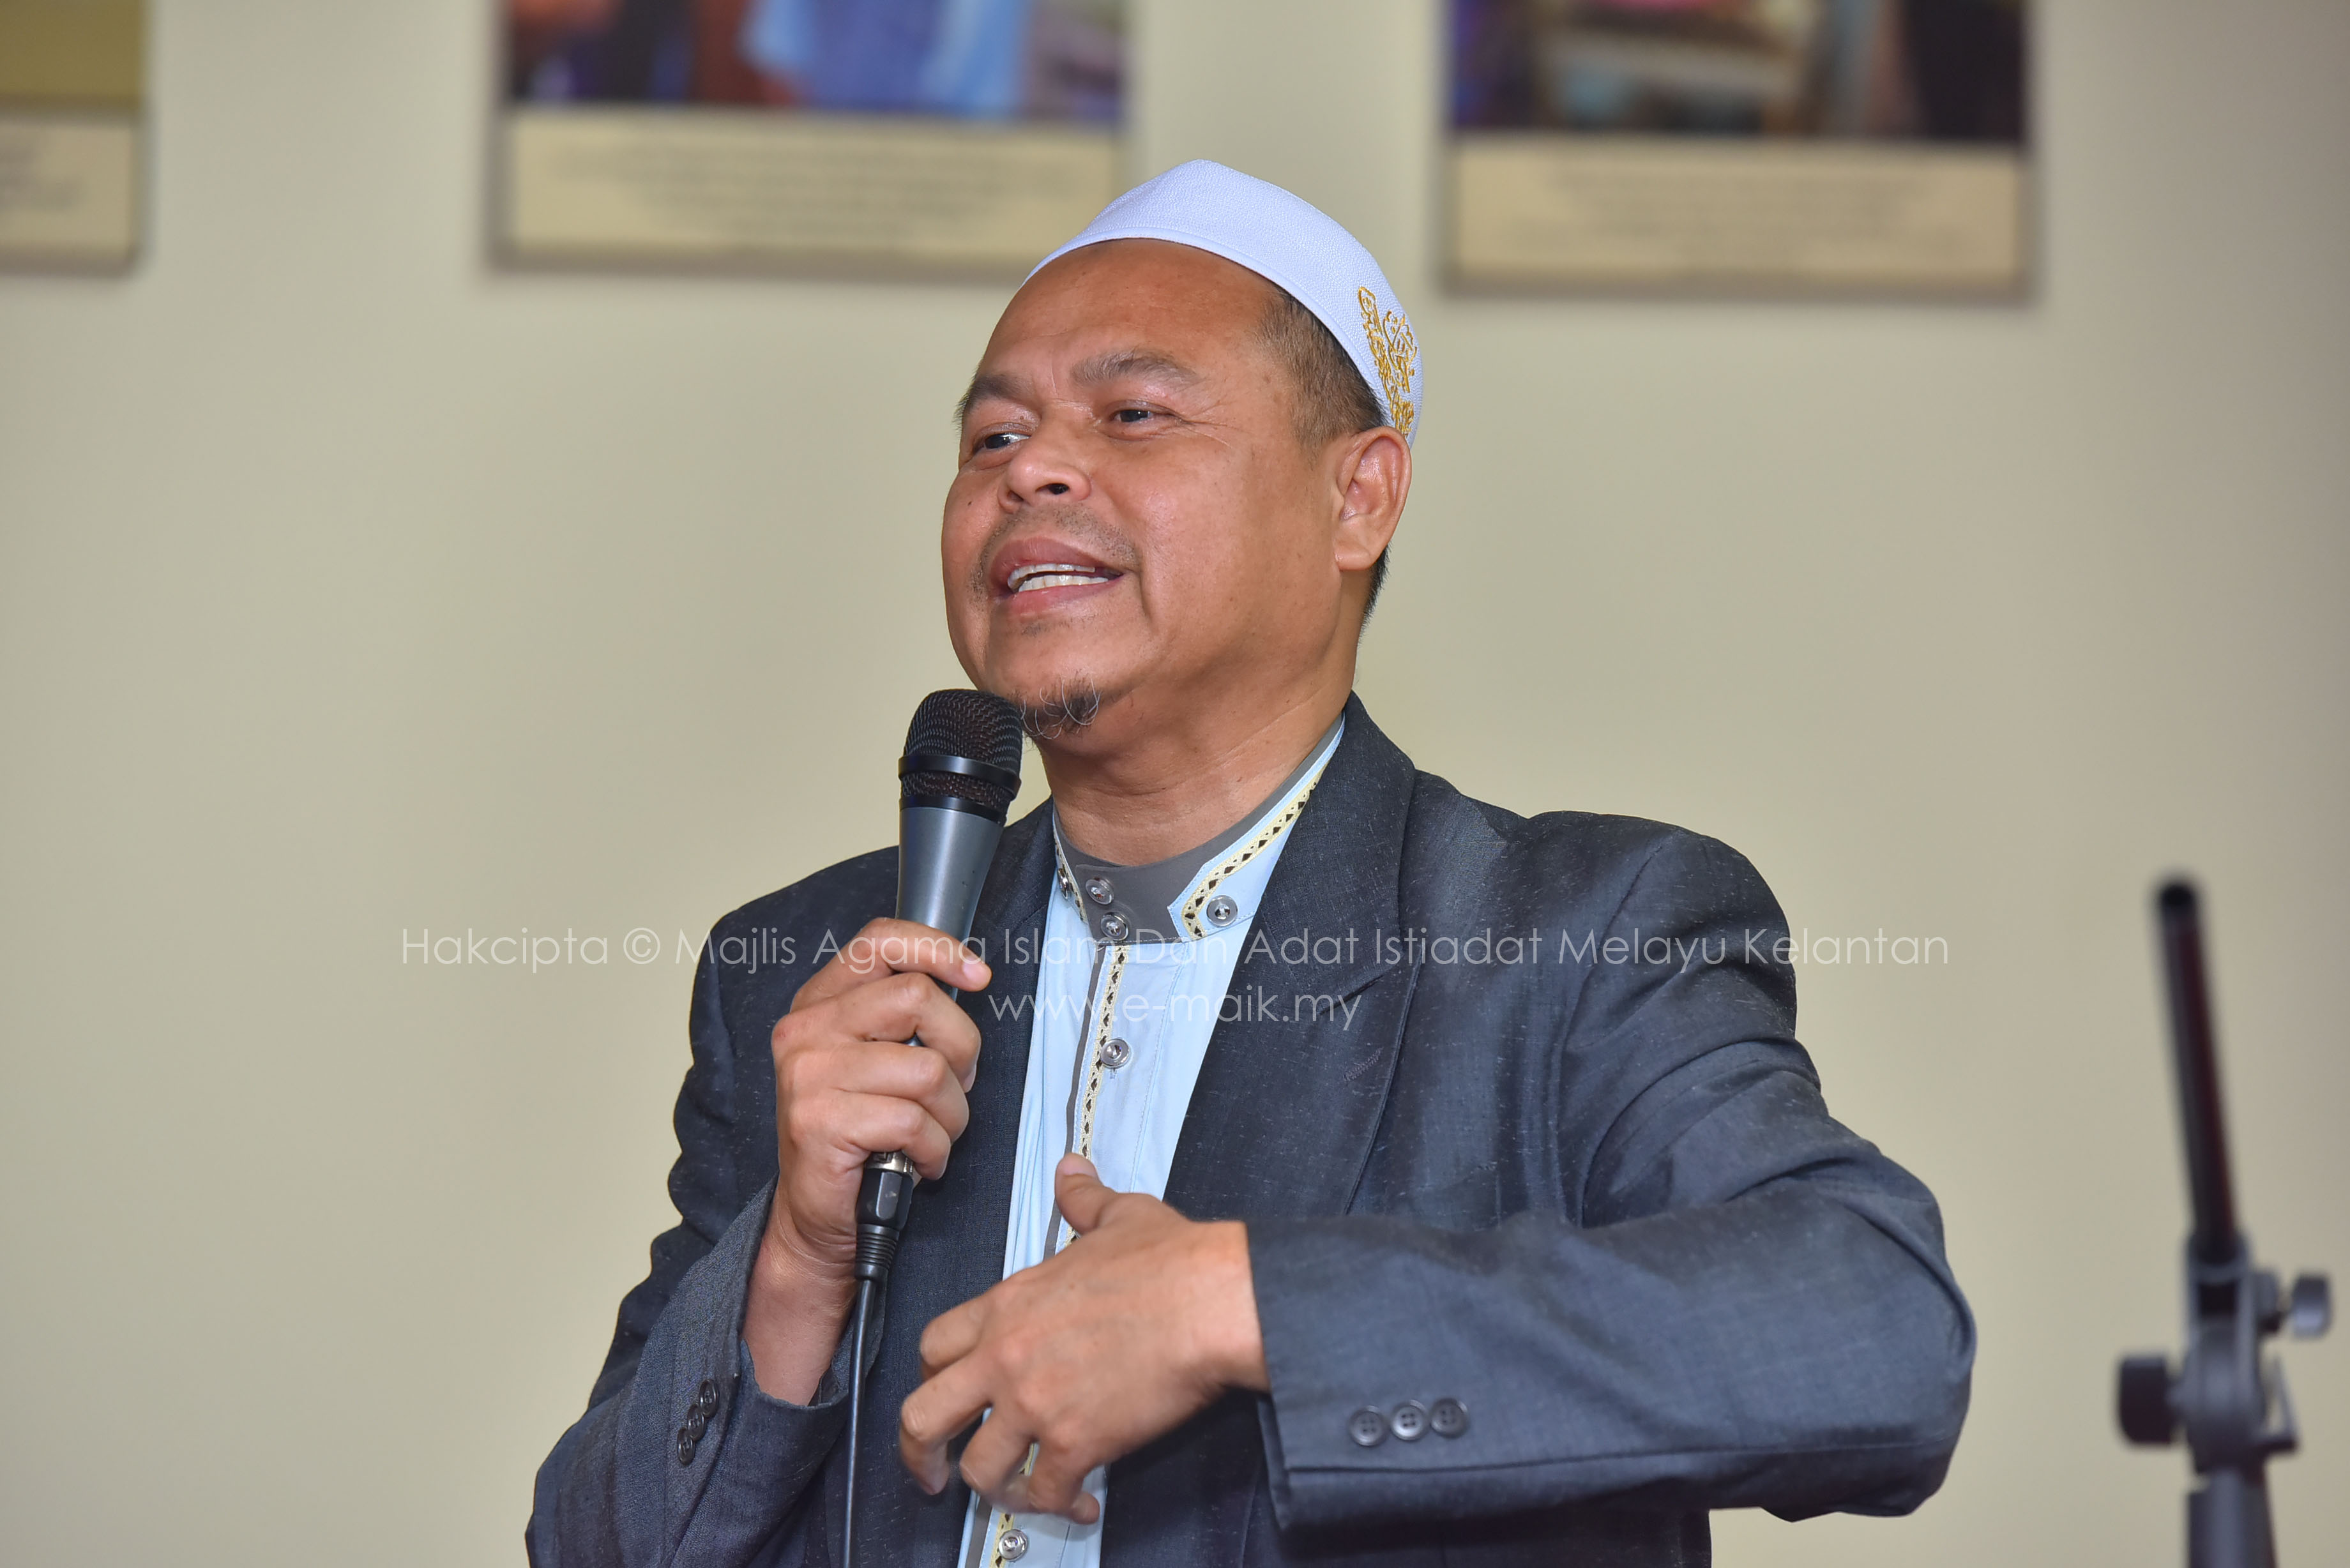 Kelantan pengarah jpn Akademik Bahasa: